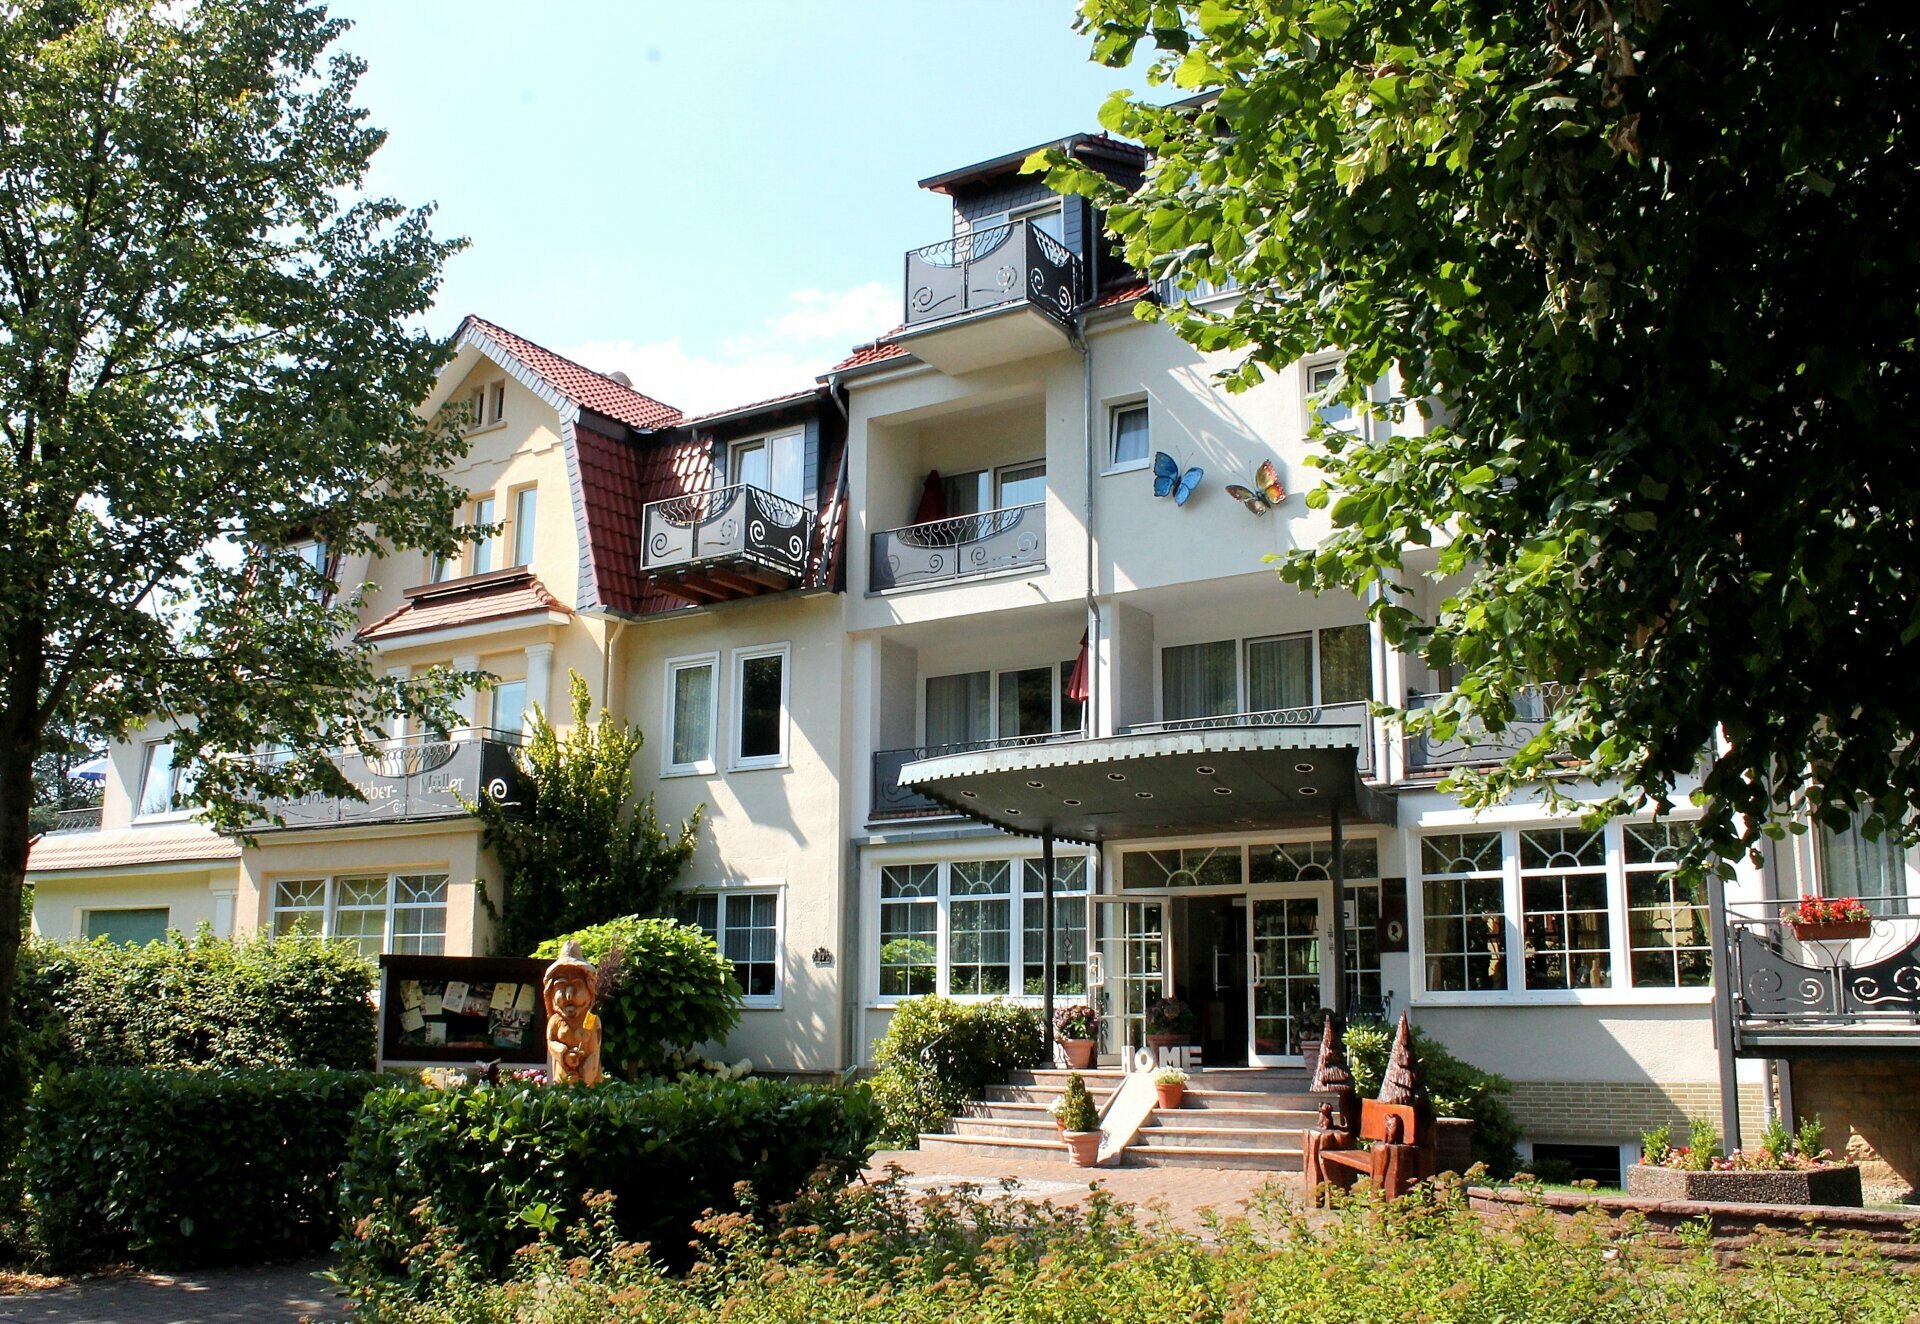 Winterspezial 4 = 3 Tage – Parkhotel Weber-Müller  (4 Sterne) in Bad Lauterberg, Niedersachsen inkl. Halbpension